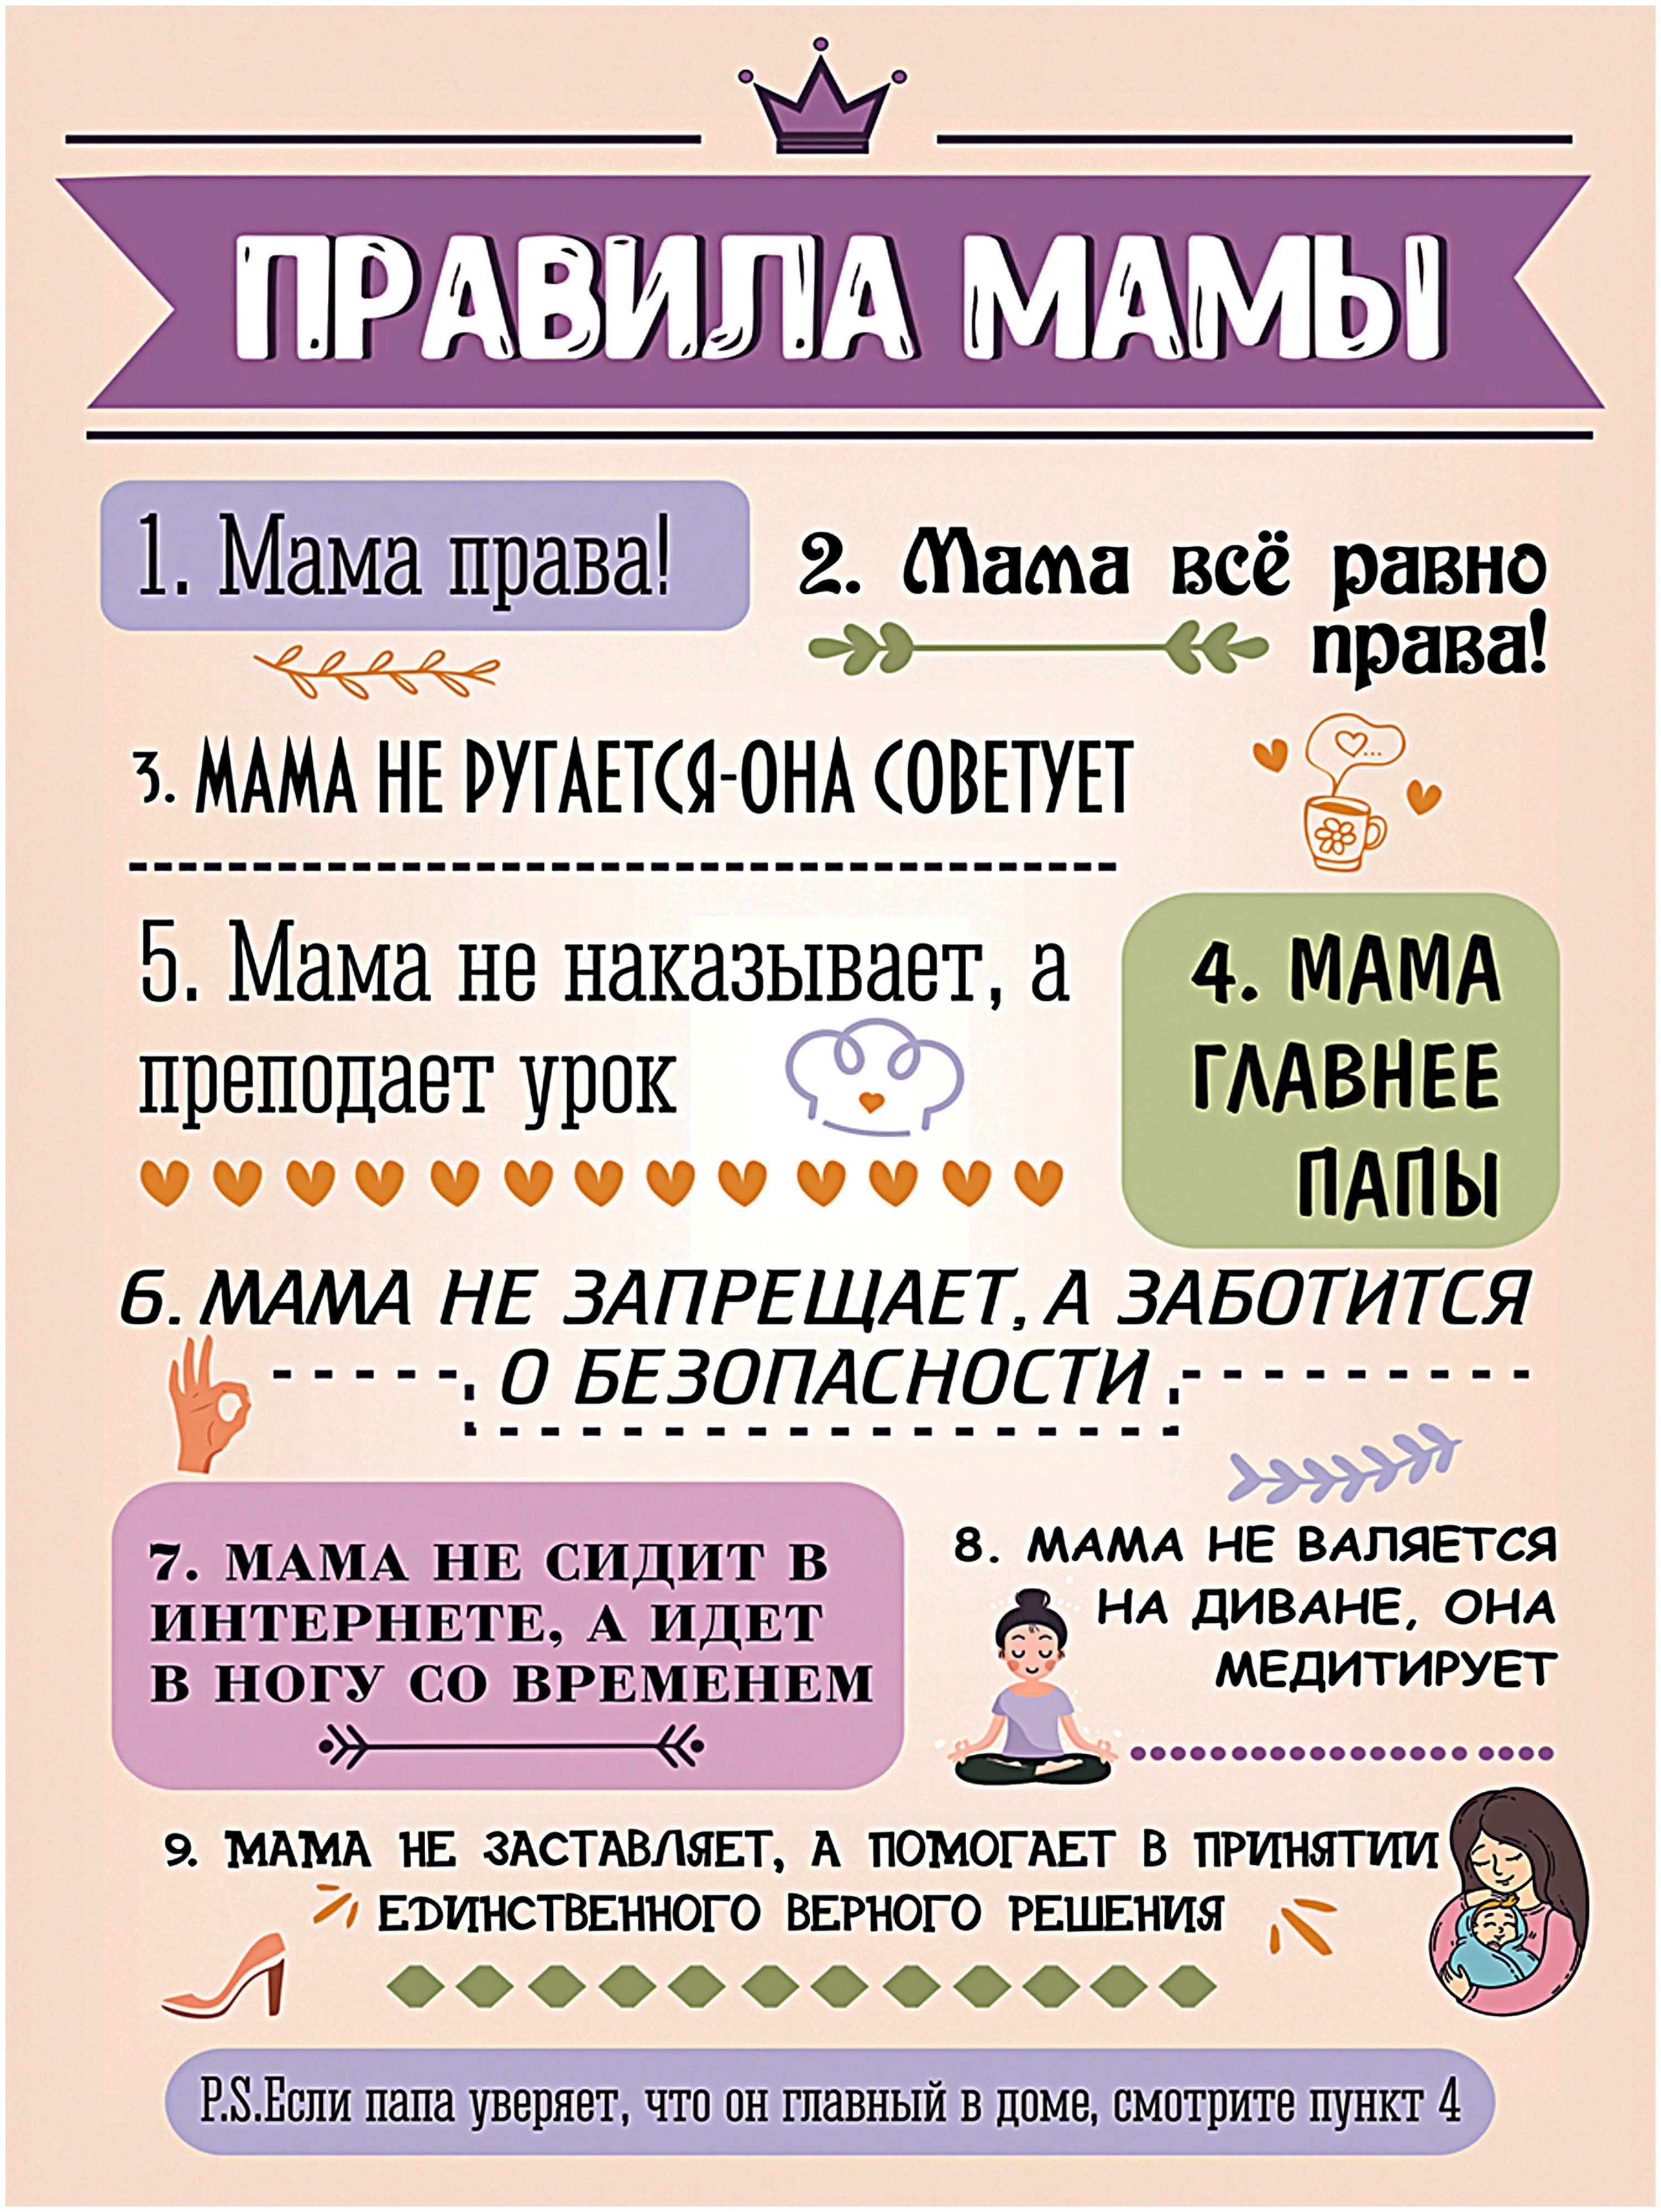 10 домашних правил. Правила мамы. Постер " правила мамы". Правила дома мамы. Правила мамы прикольные.